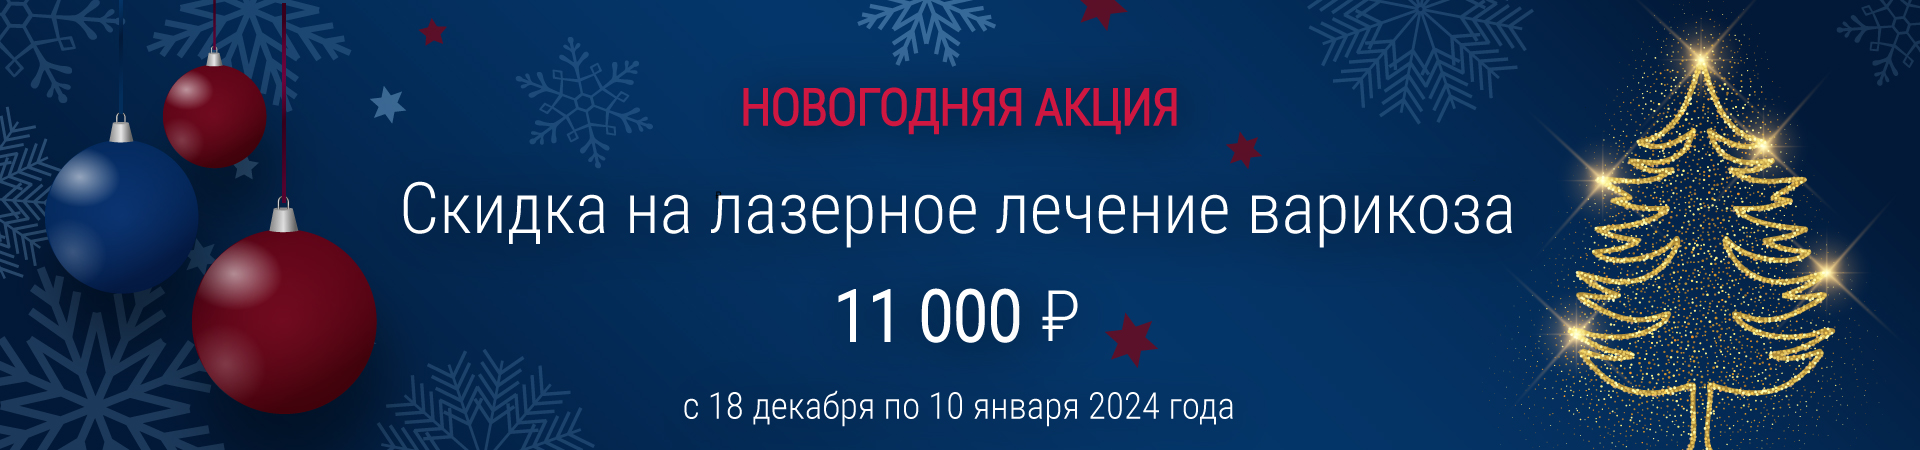 Скидка на лазерное лечение варикоза 11 000 рублей! 